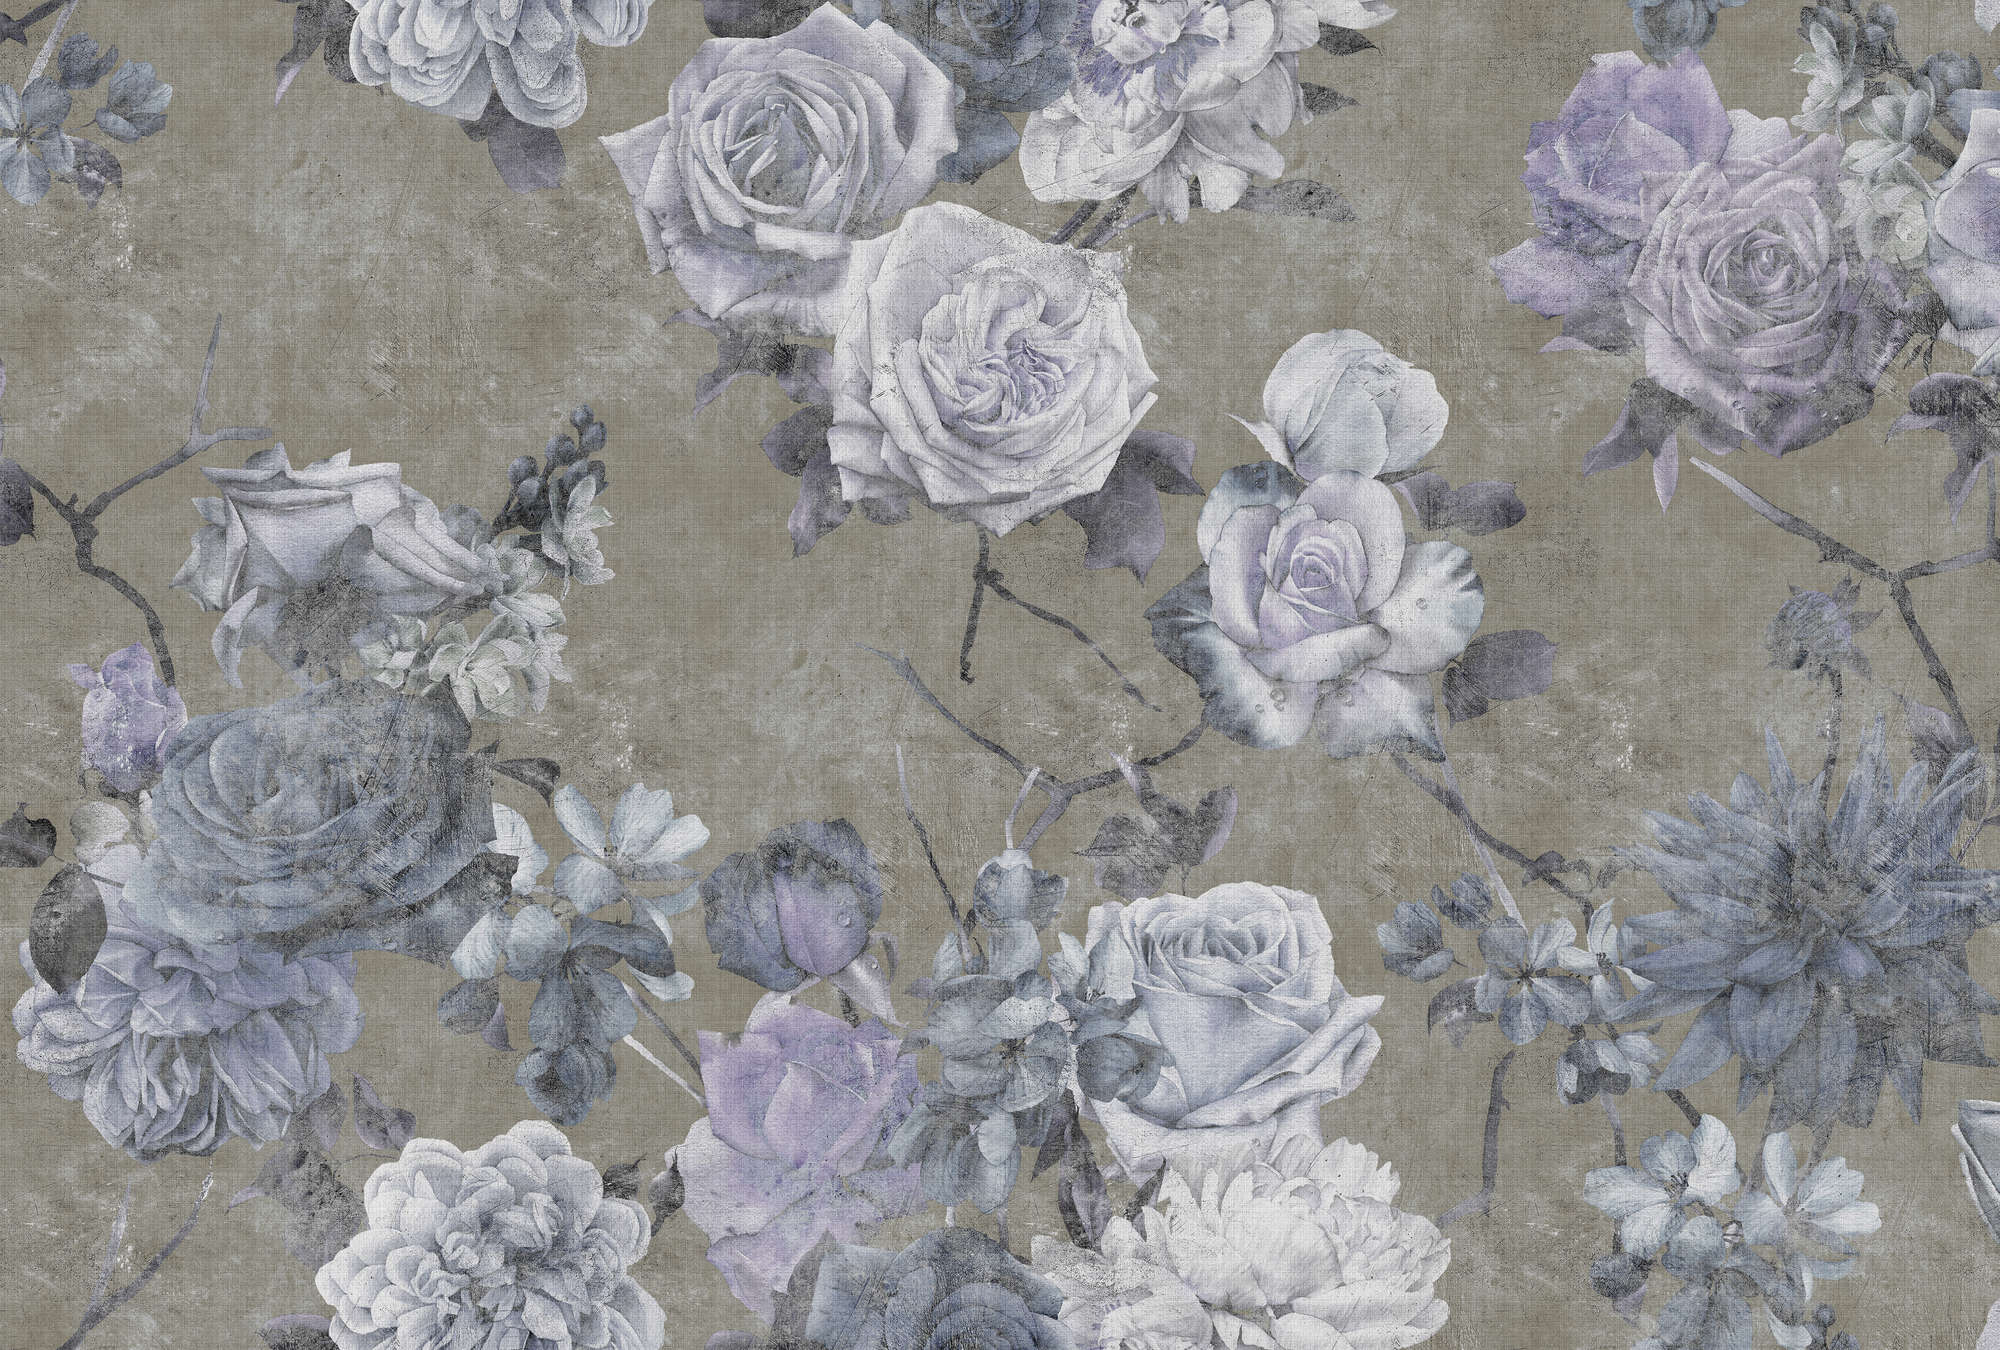             Sleeping Beauty 1 - Papier peint panoramique à structure lin naturel Fleurs de roses aspect usé - bleu, taupe | Intissé lisse mat
        